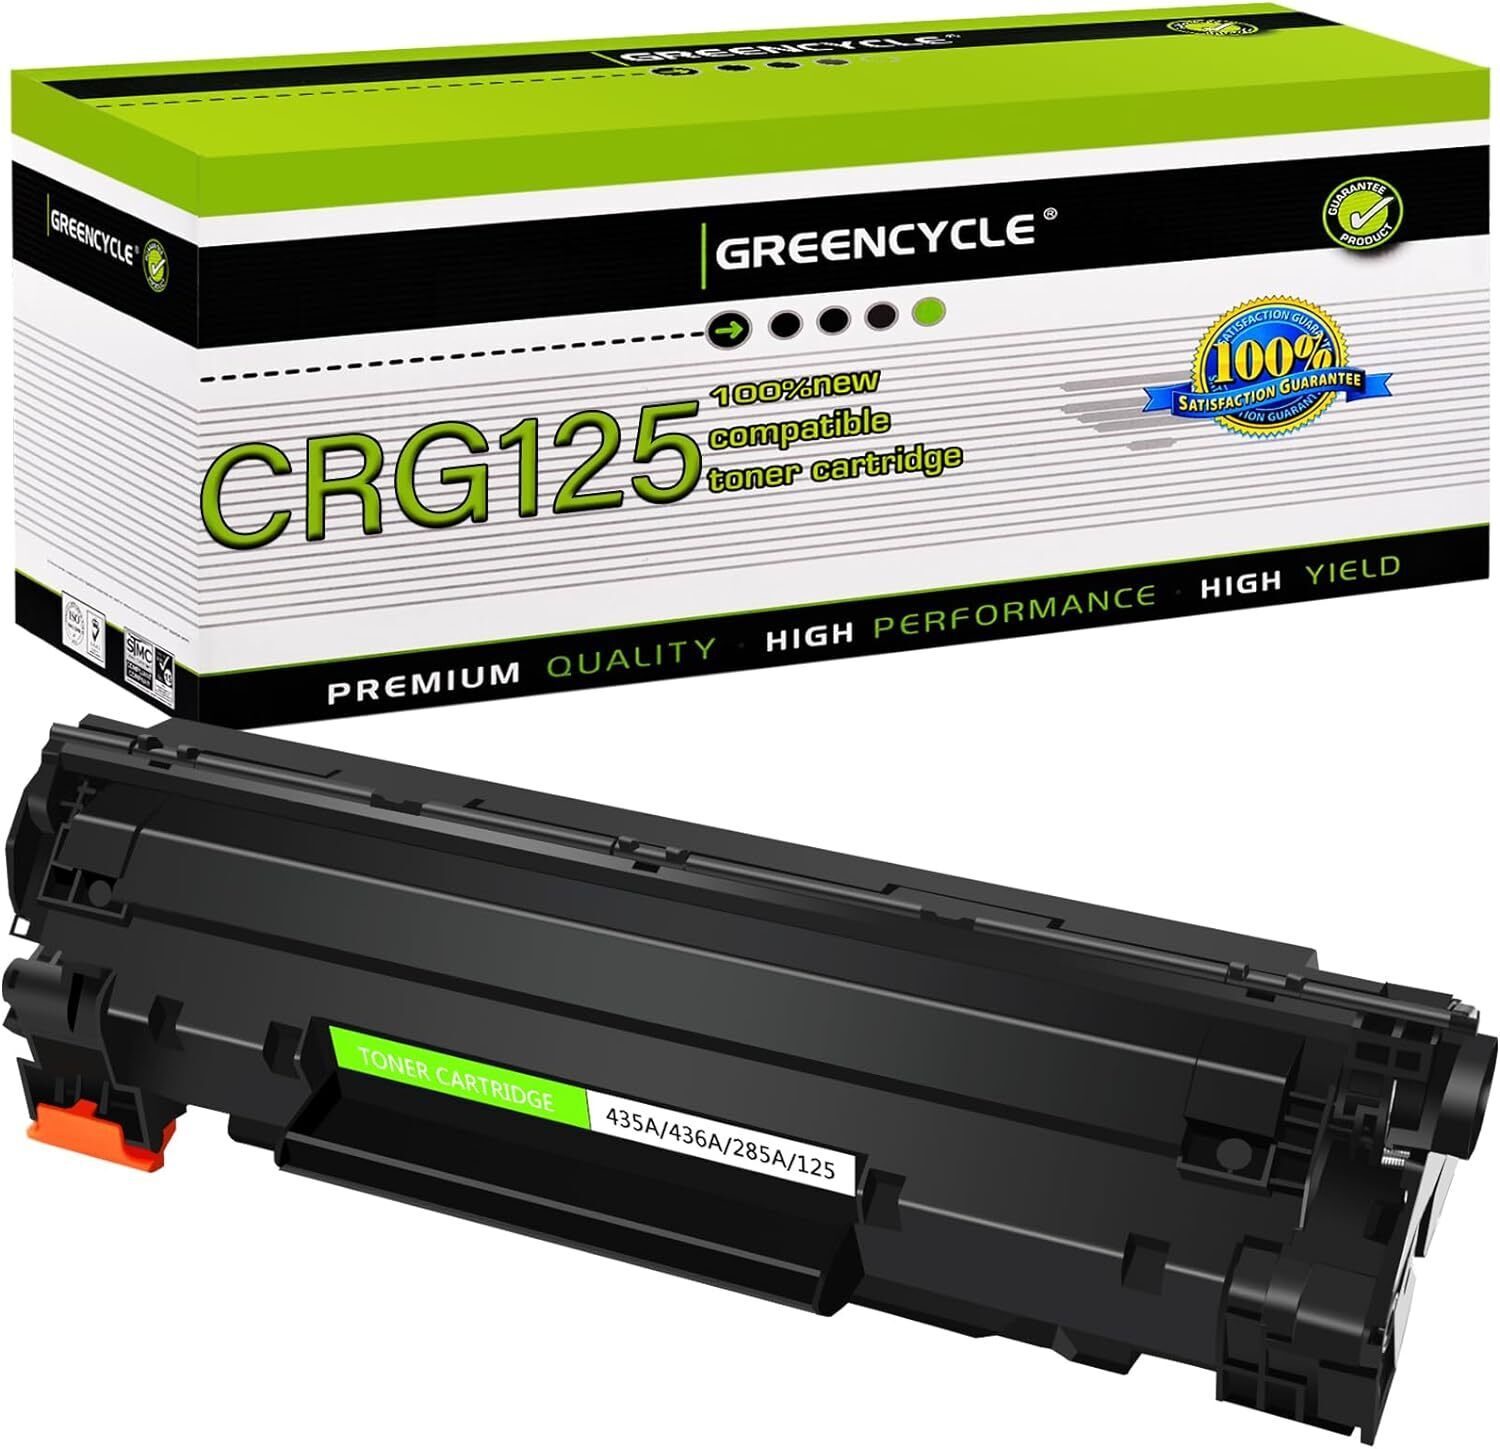 1PK Greencycle CRG125 Toner for Canon 125 imageCLASS LBP6000, LBP6000B, LBP6018